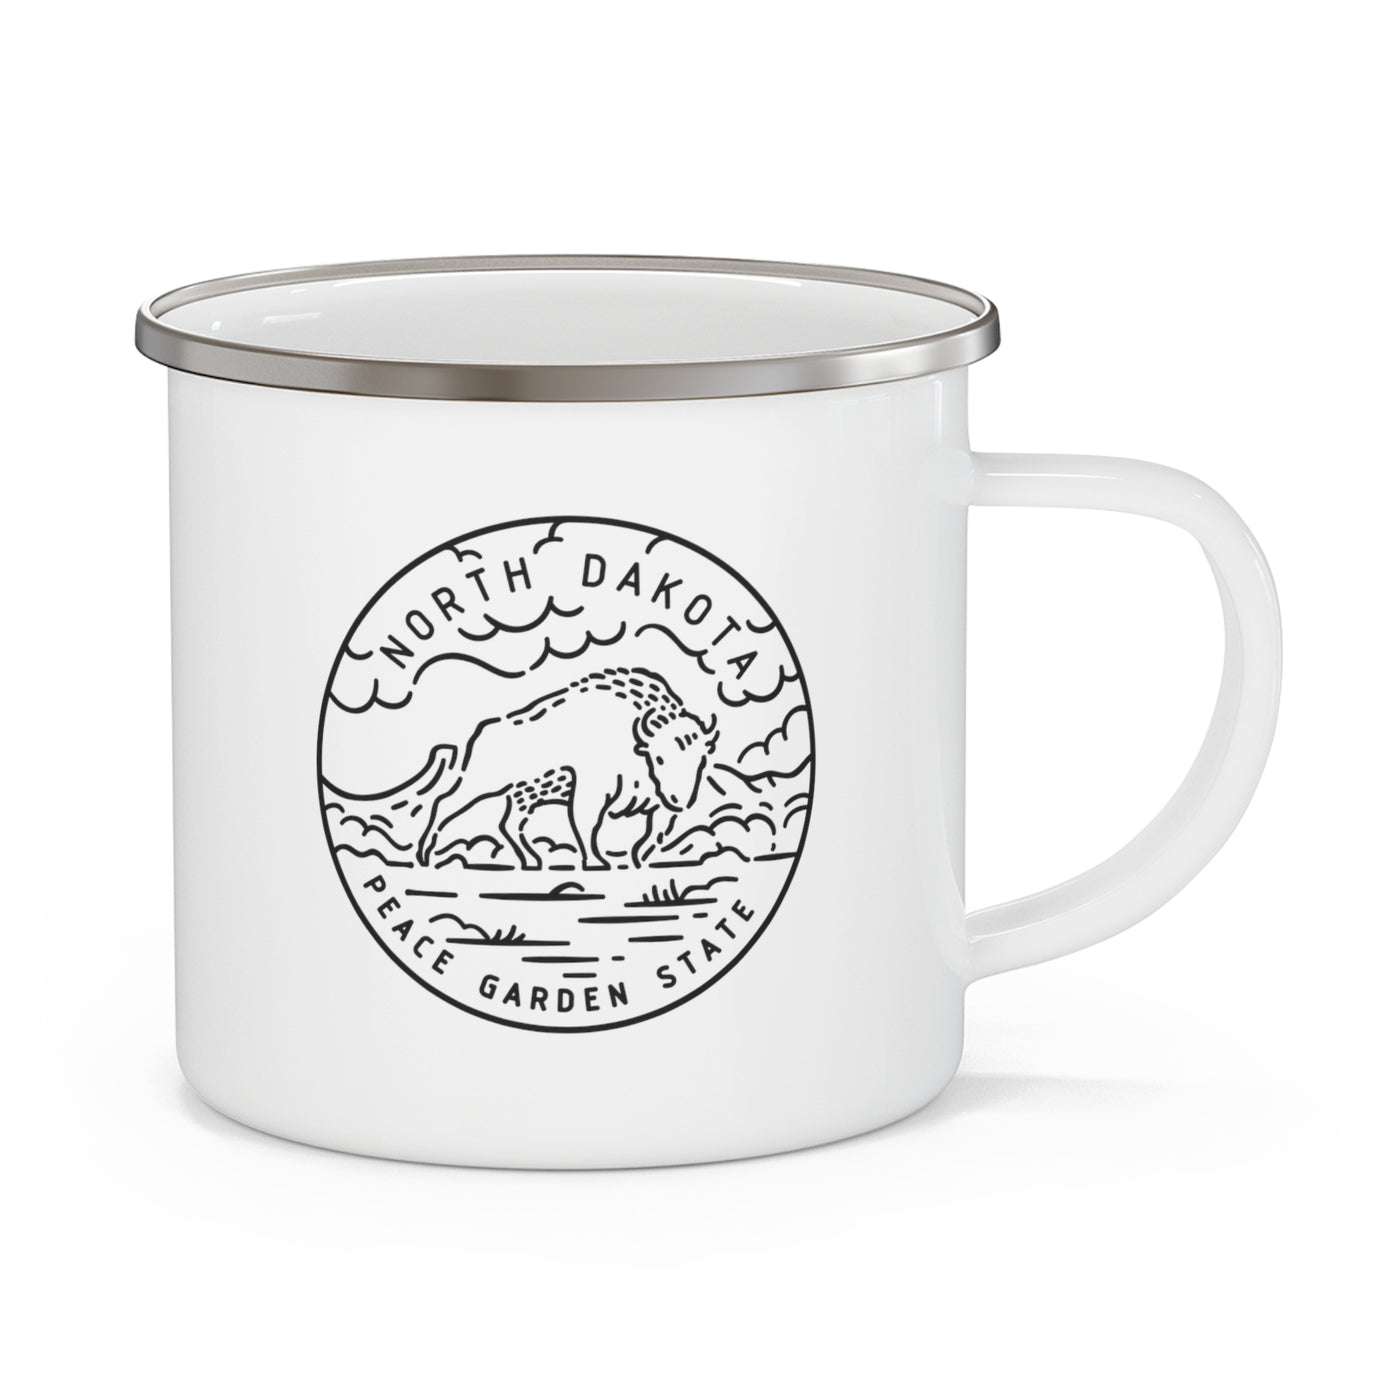 North Dakota State Motto Enamel Camping Mug